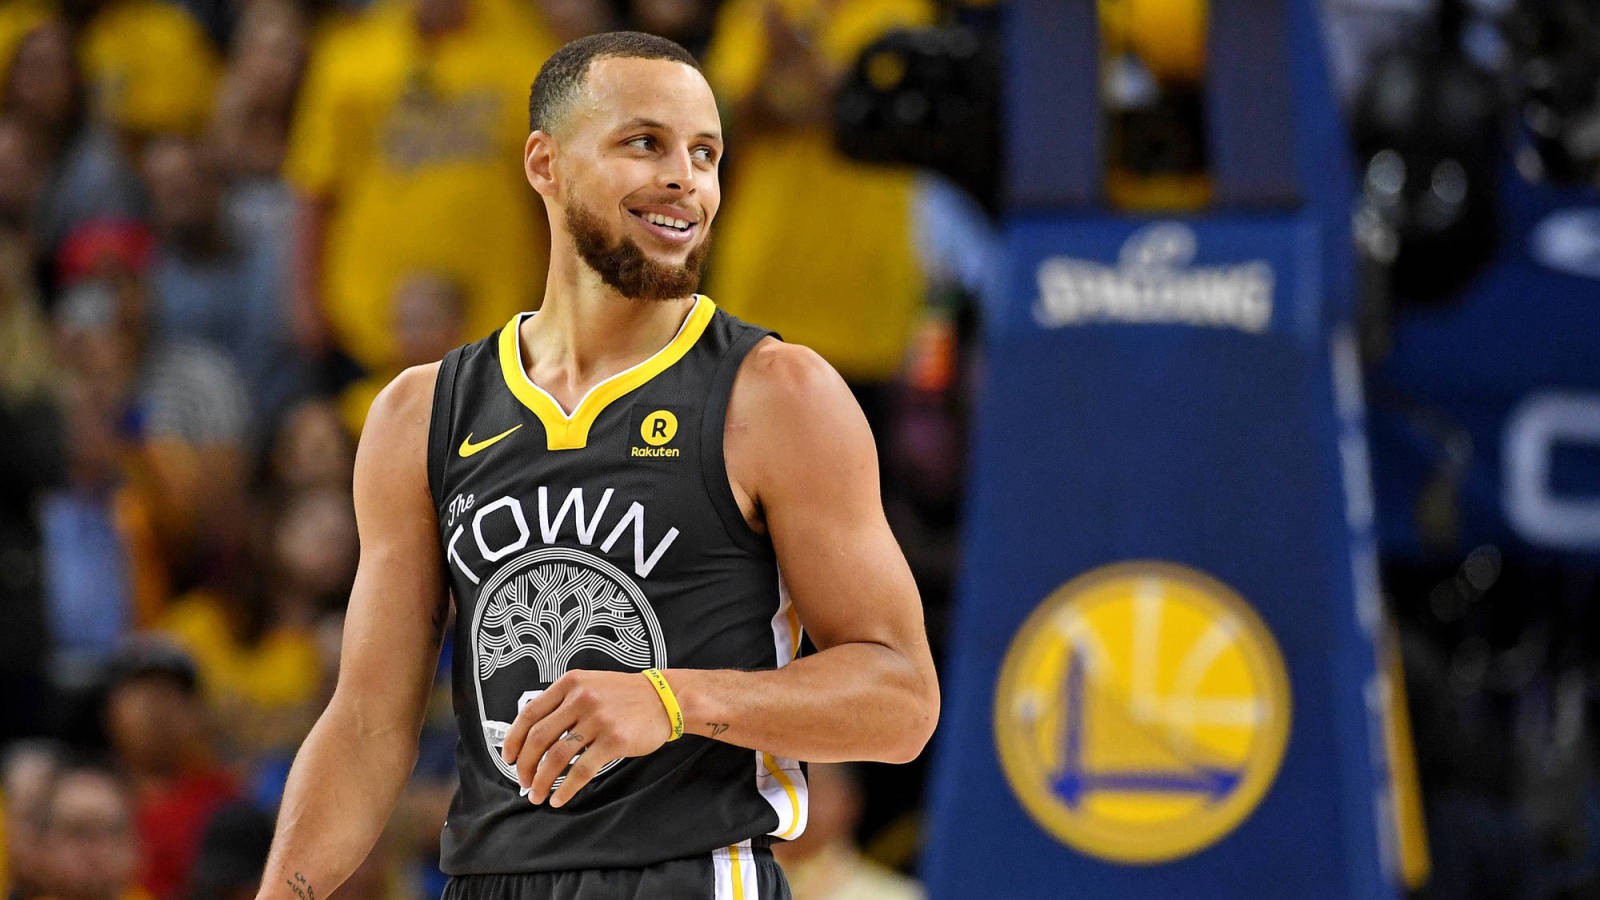 Kỷ lục 9 quả 3 điểm chưa là gì, Curry đang đẩy bản thân lên một giới hạn mới - Ảnh 2.